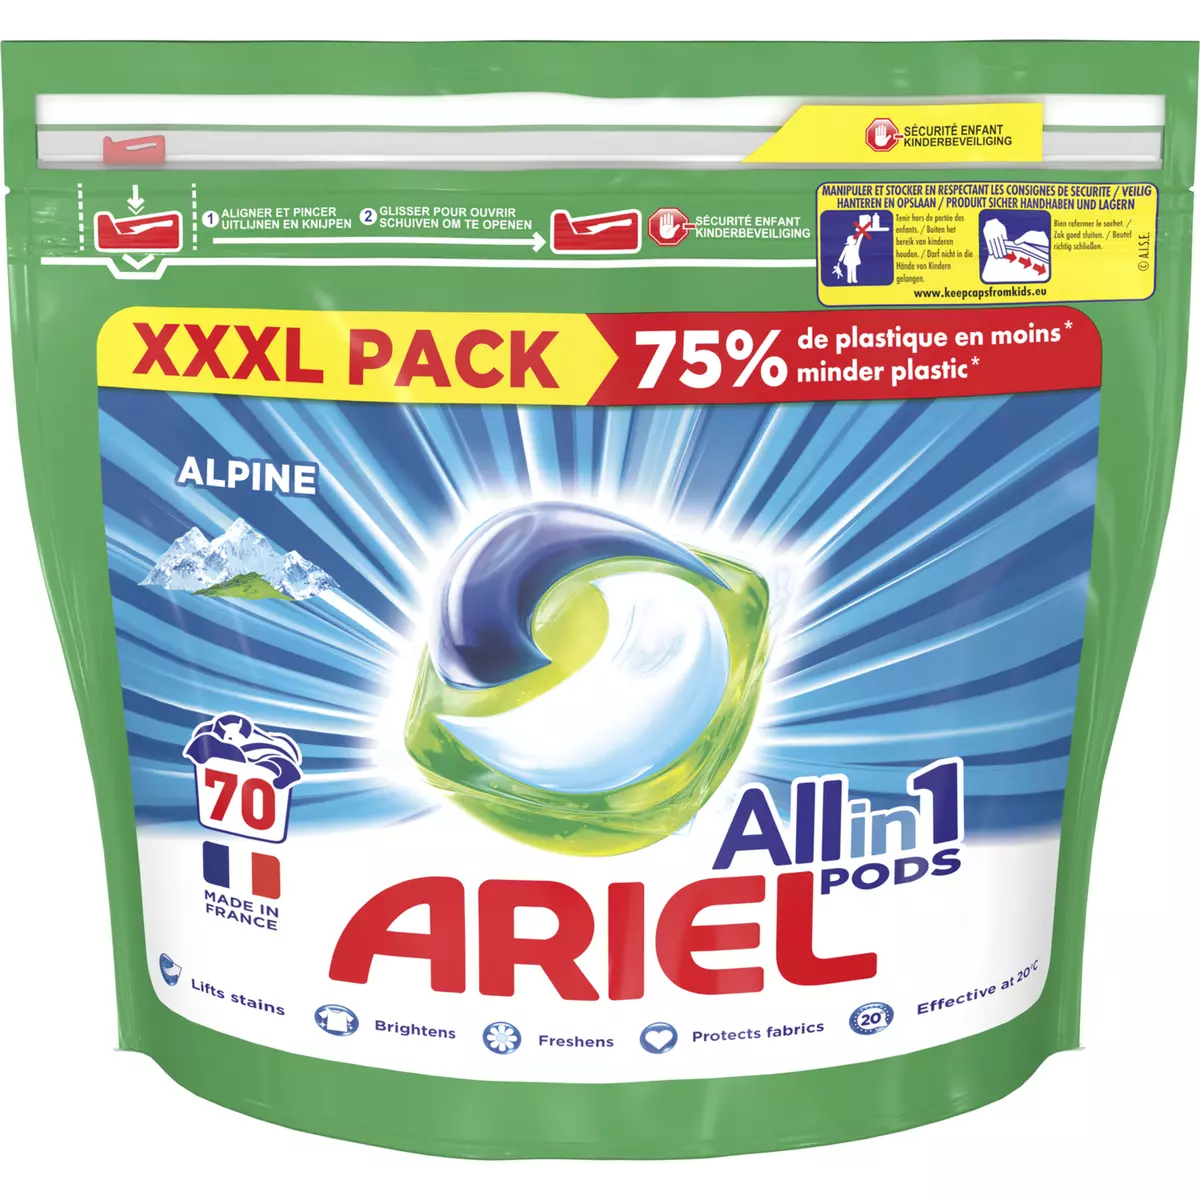 ARIEL Pods capsules de lessive all in 1 alpine 70 capsules